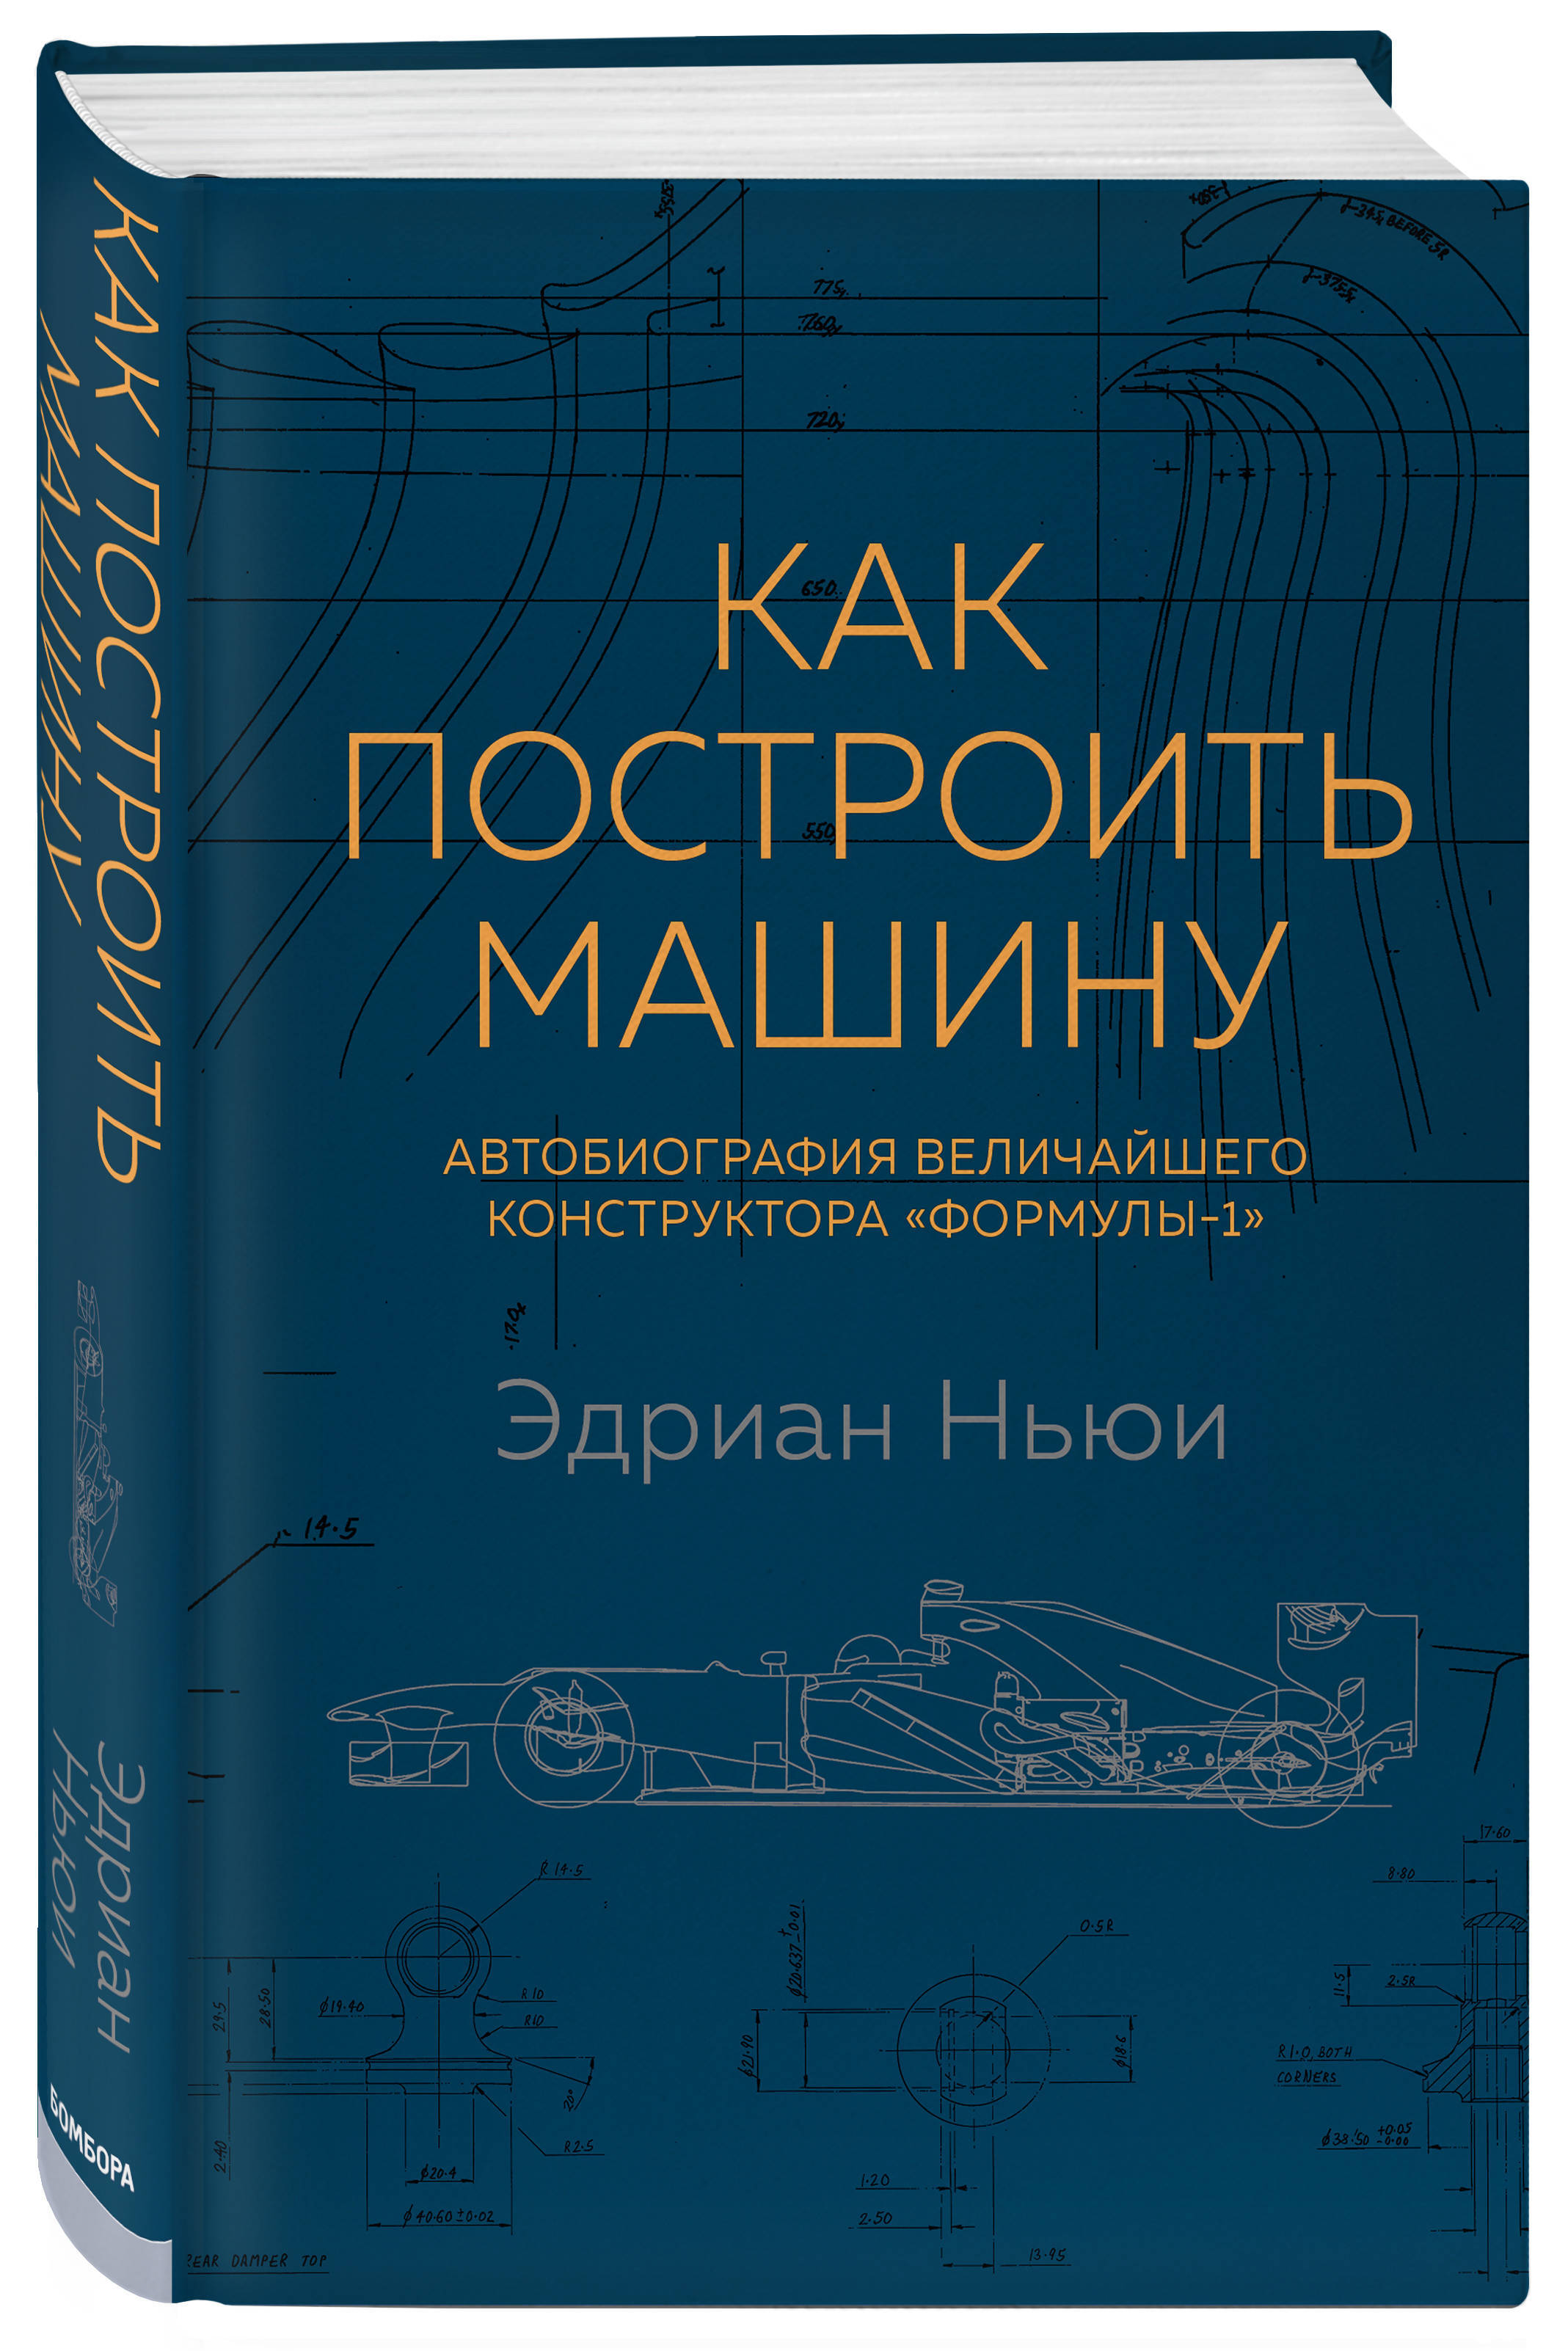 Обложка книги Ньюи Эдриан: Как построить машину. Автобиография величайшего конструктора «Формулы-1»